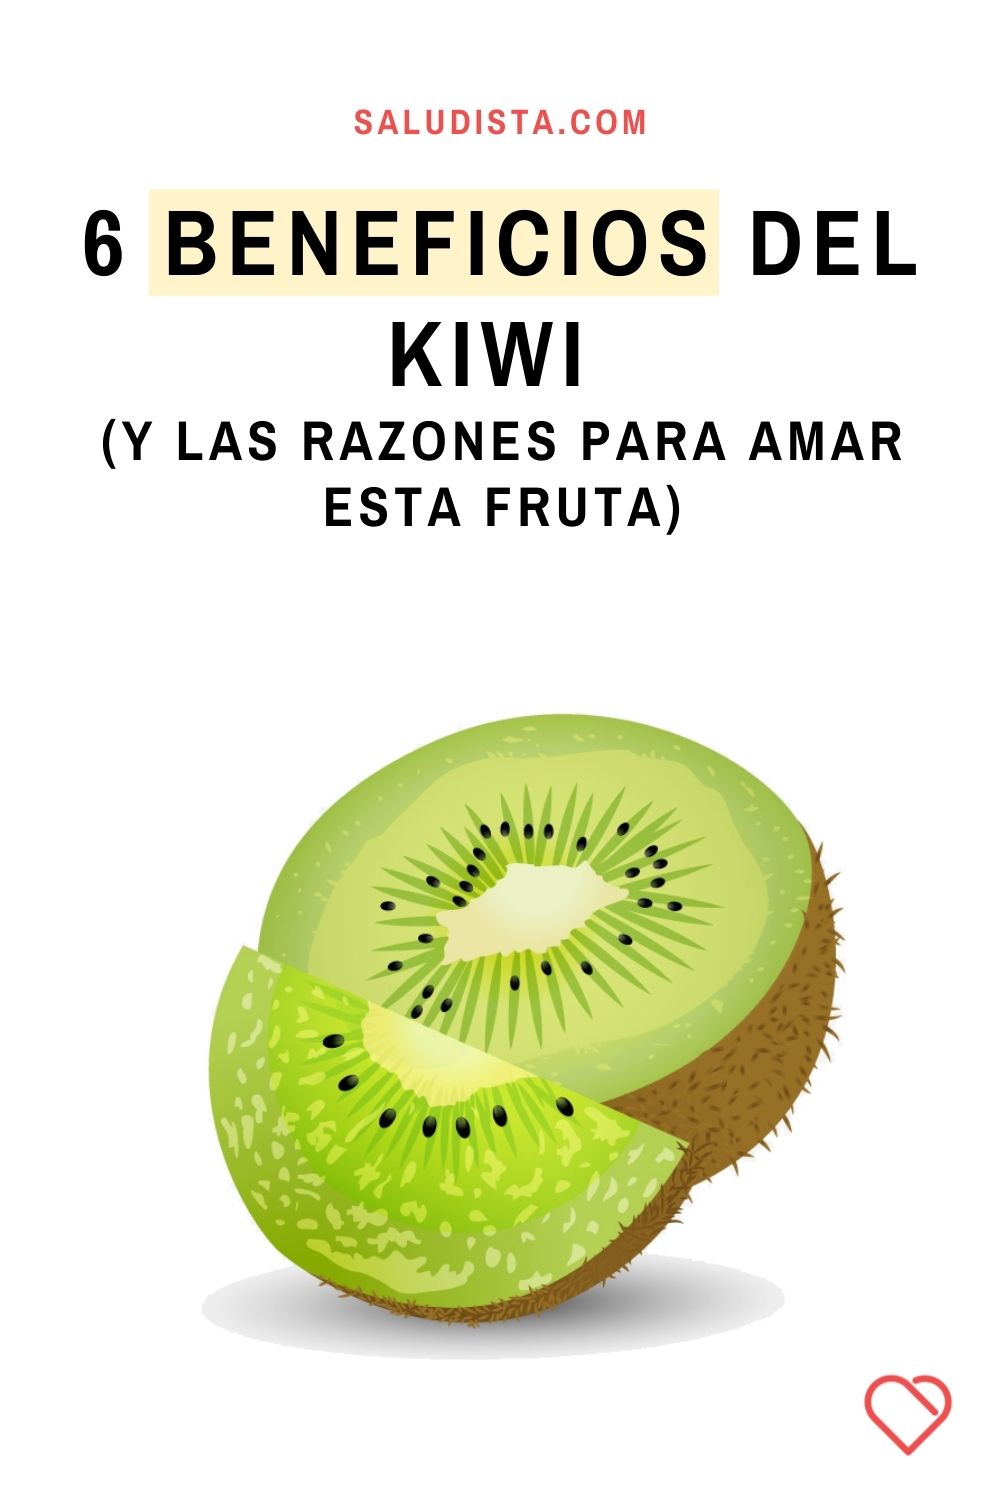 6 beneficios del kiwi (y las razones para amar esta fruta)